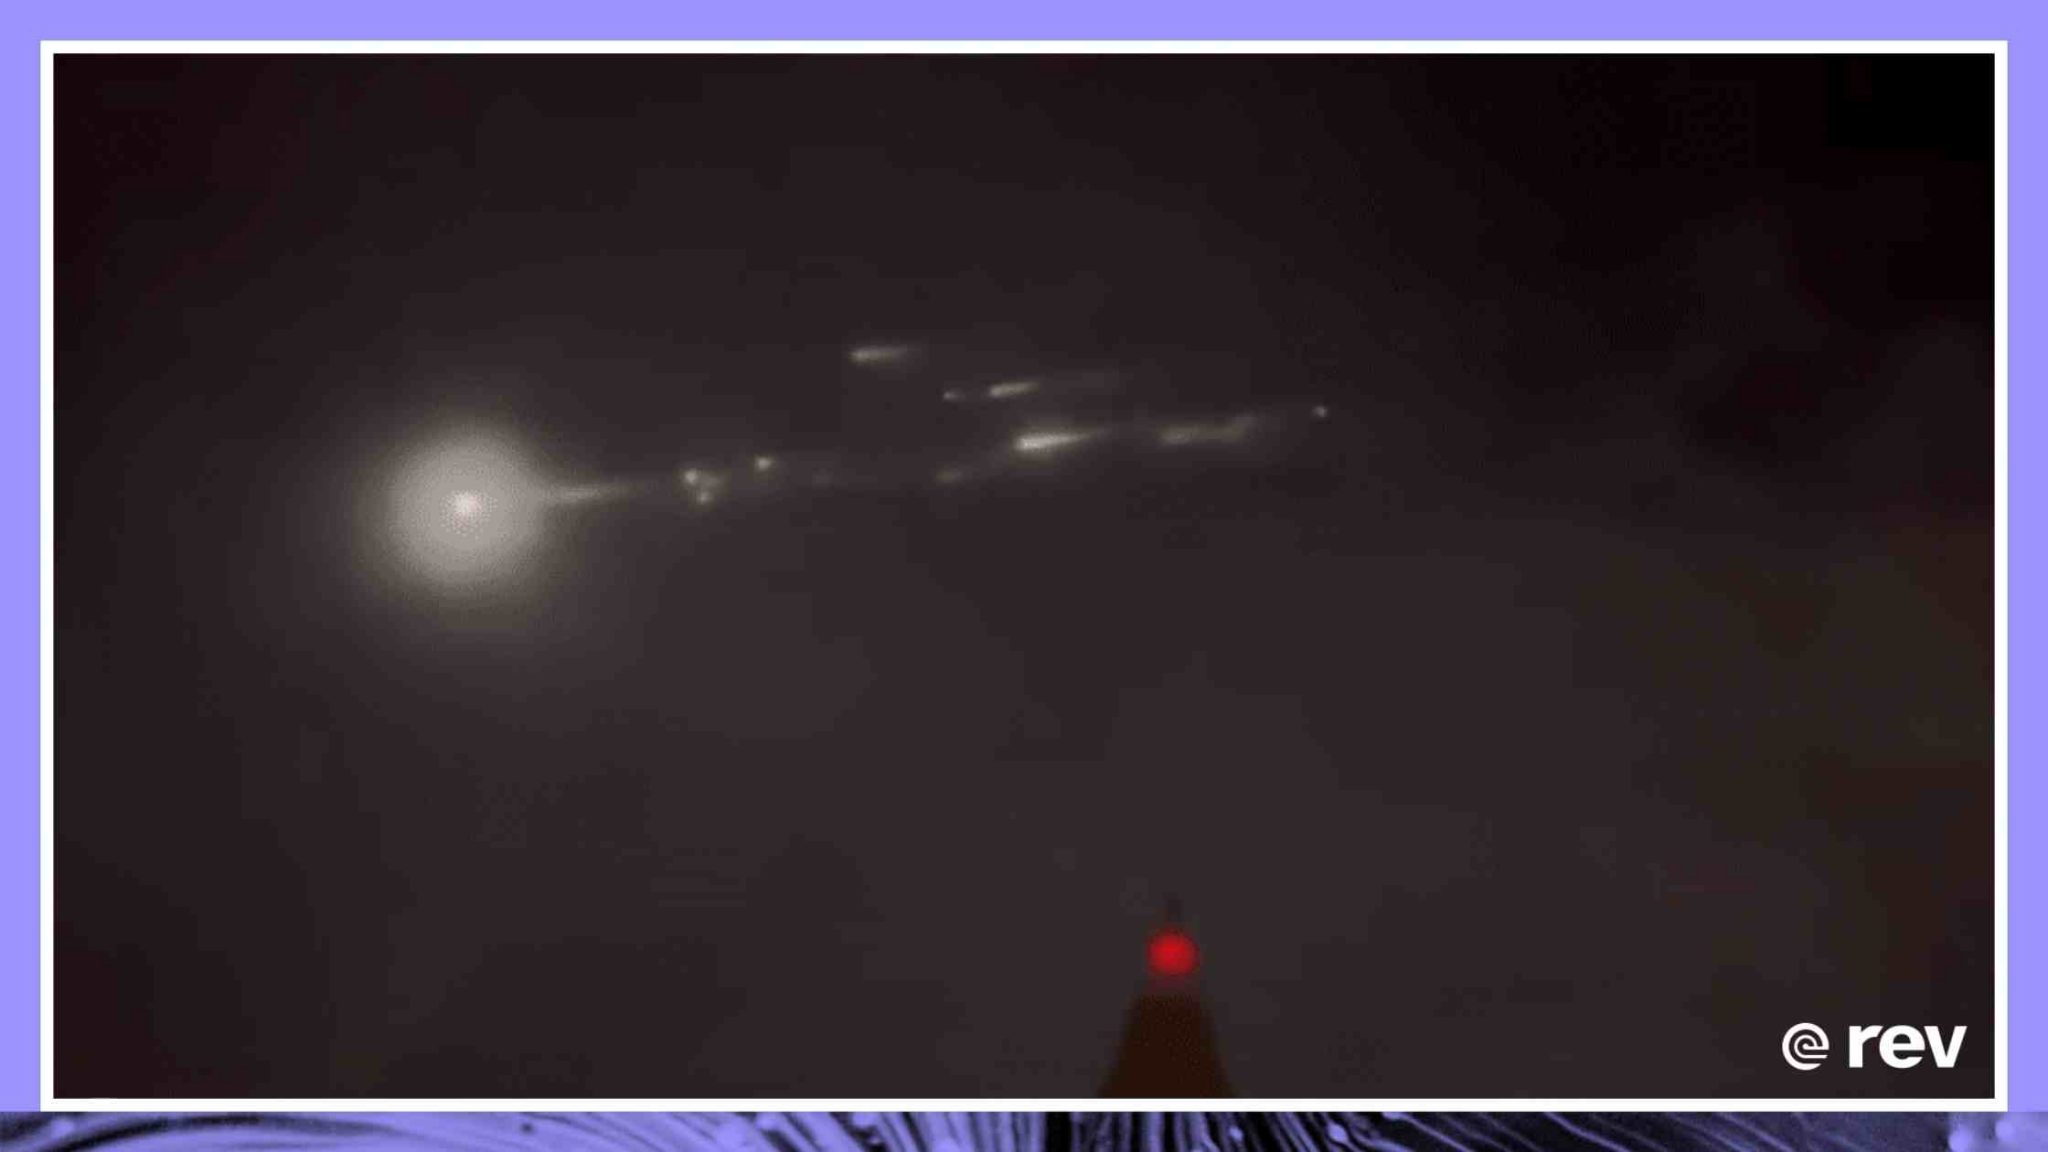 视频显示中国火箭碎片在大气层中燃烧